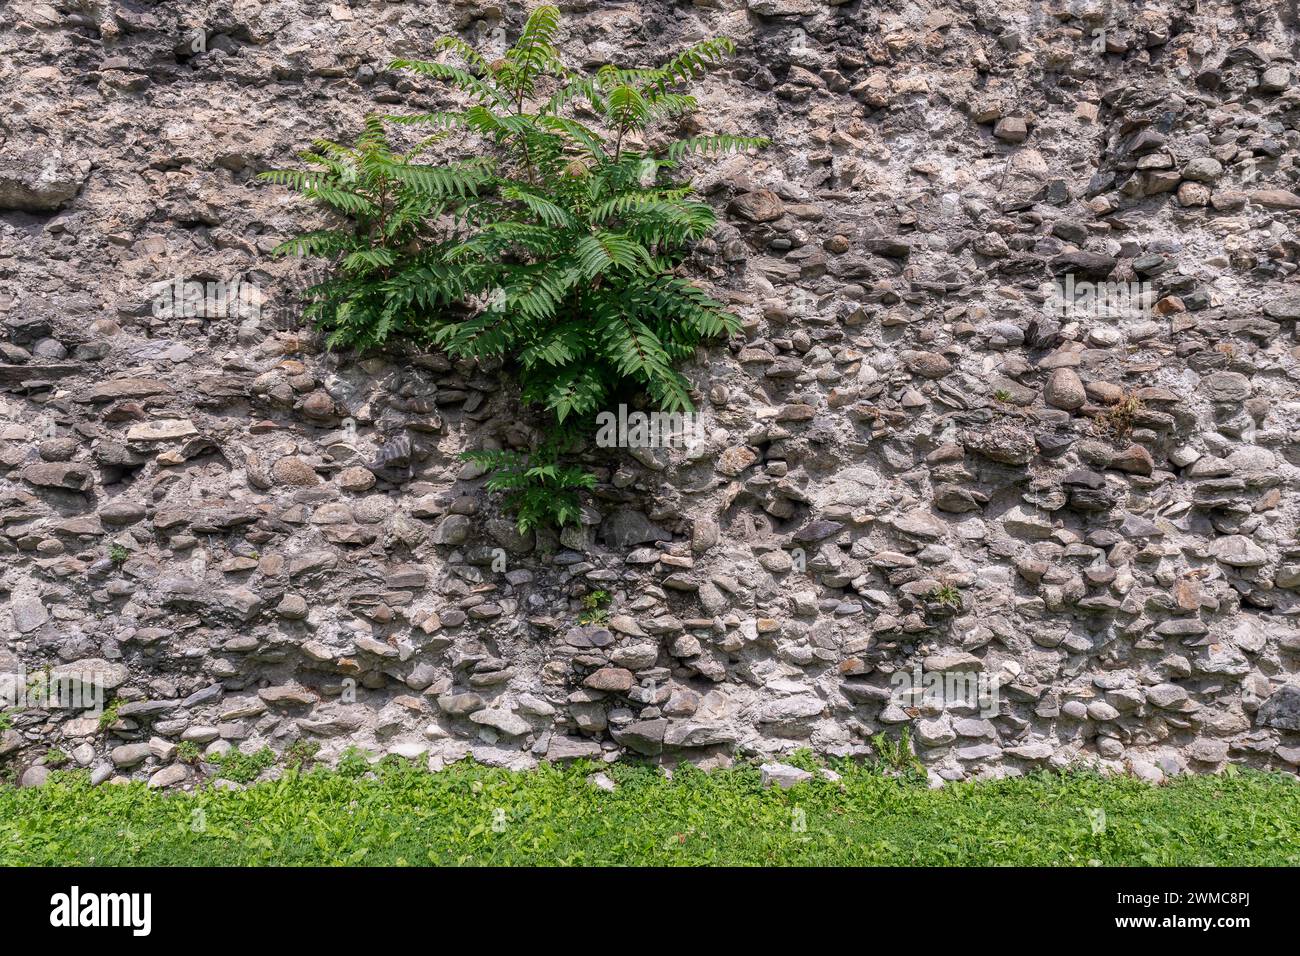 Particolare delle mura cittadine, costruite in epoca romana, con piante coltivate tra le pietre, Aosta, Valle d'Aosta, Italia Foto Stock